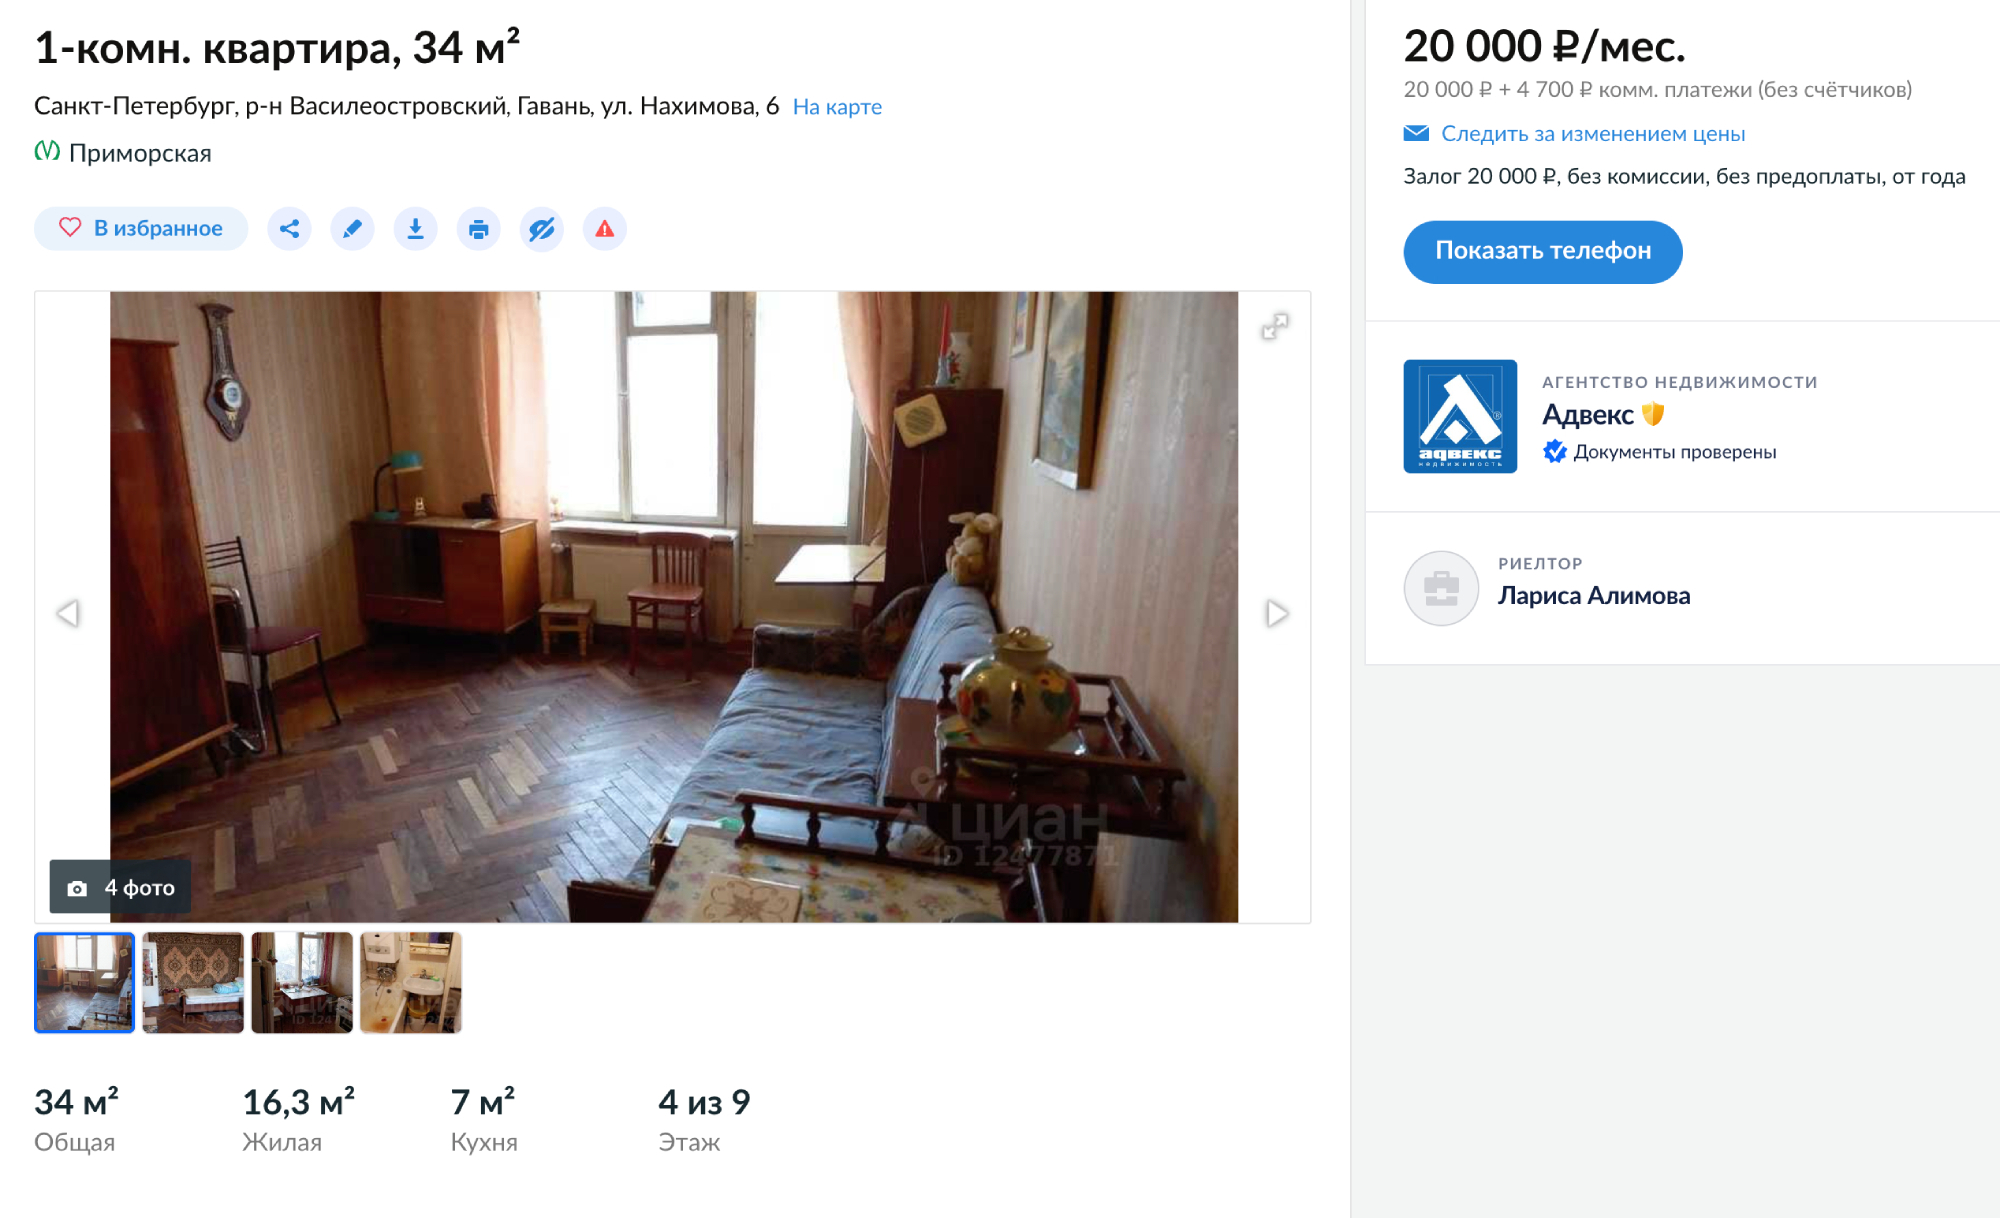 Такую однушку площадью 34 м² можно снять в советском доме на улице Нахимова в 15 минутах ходьбы от метро. Квартира дешевая, со старым ремонтом и деревянным паркетом. Источник: «Циан»